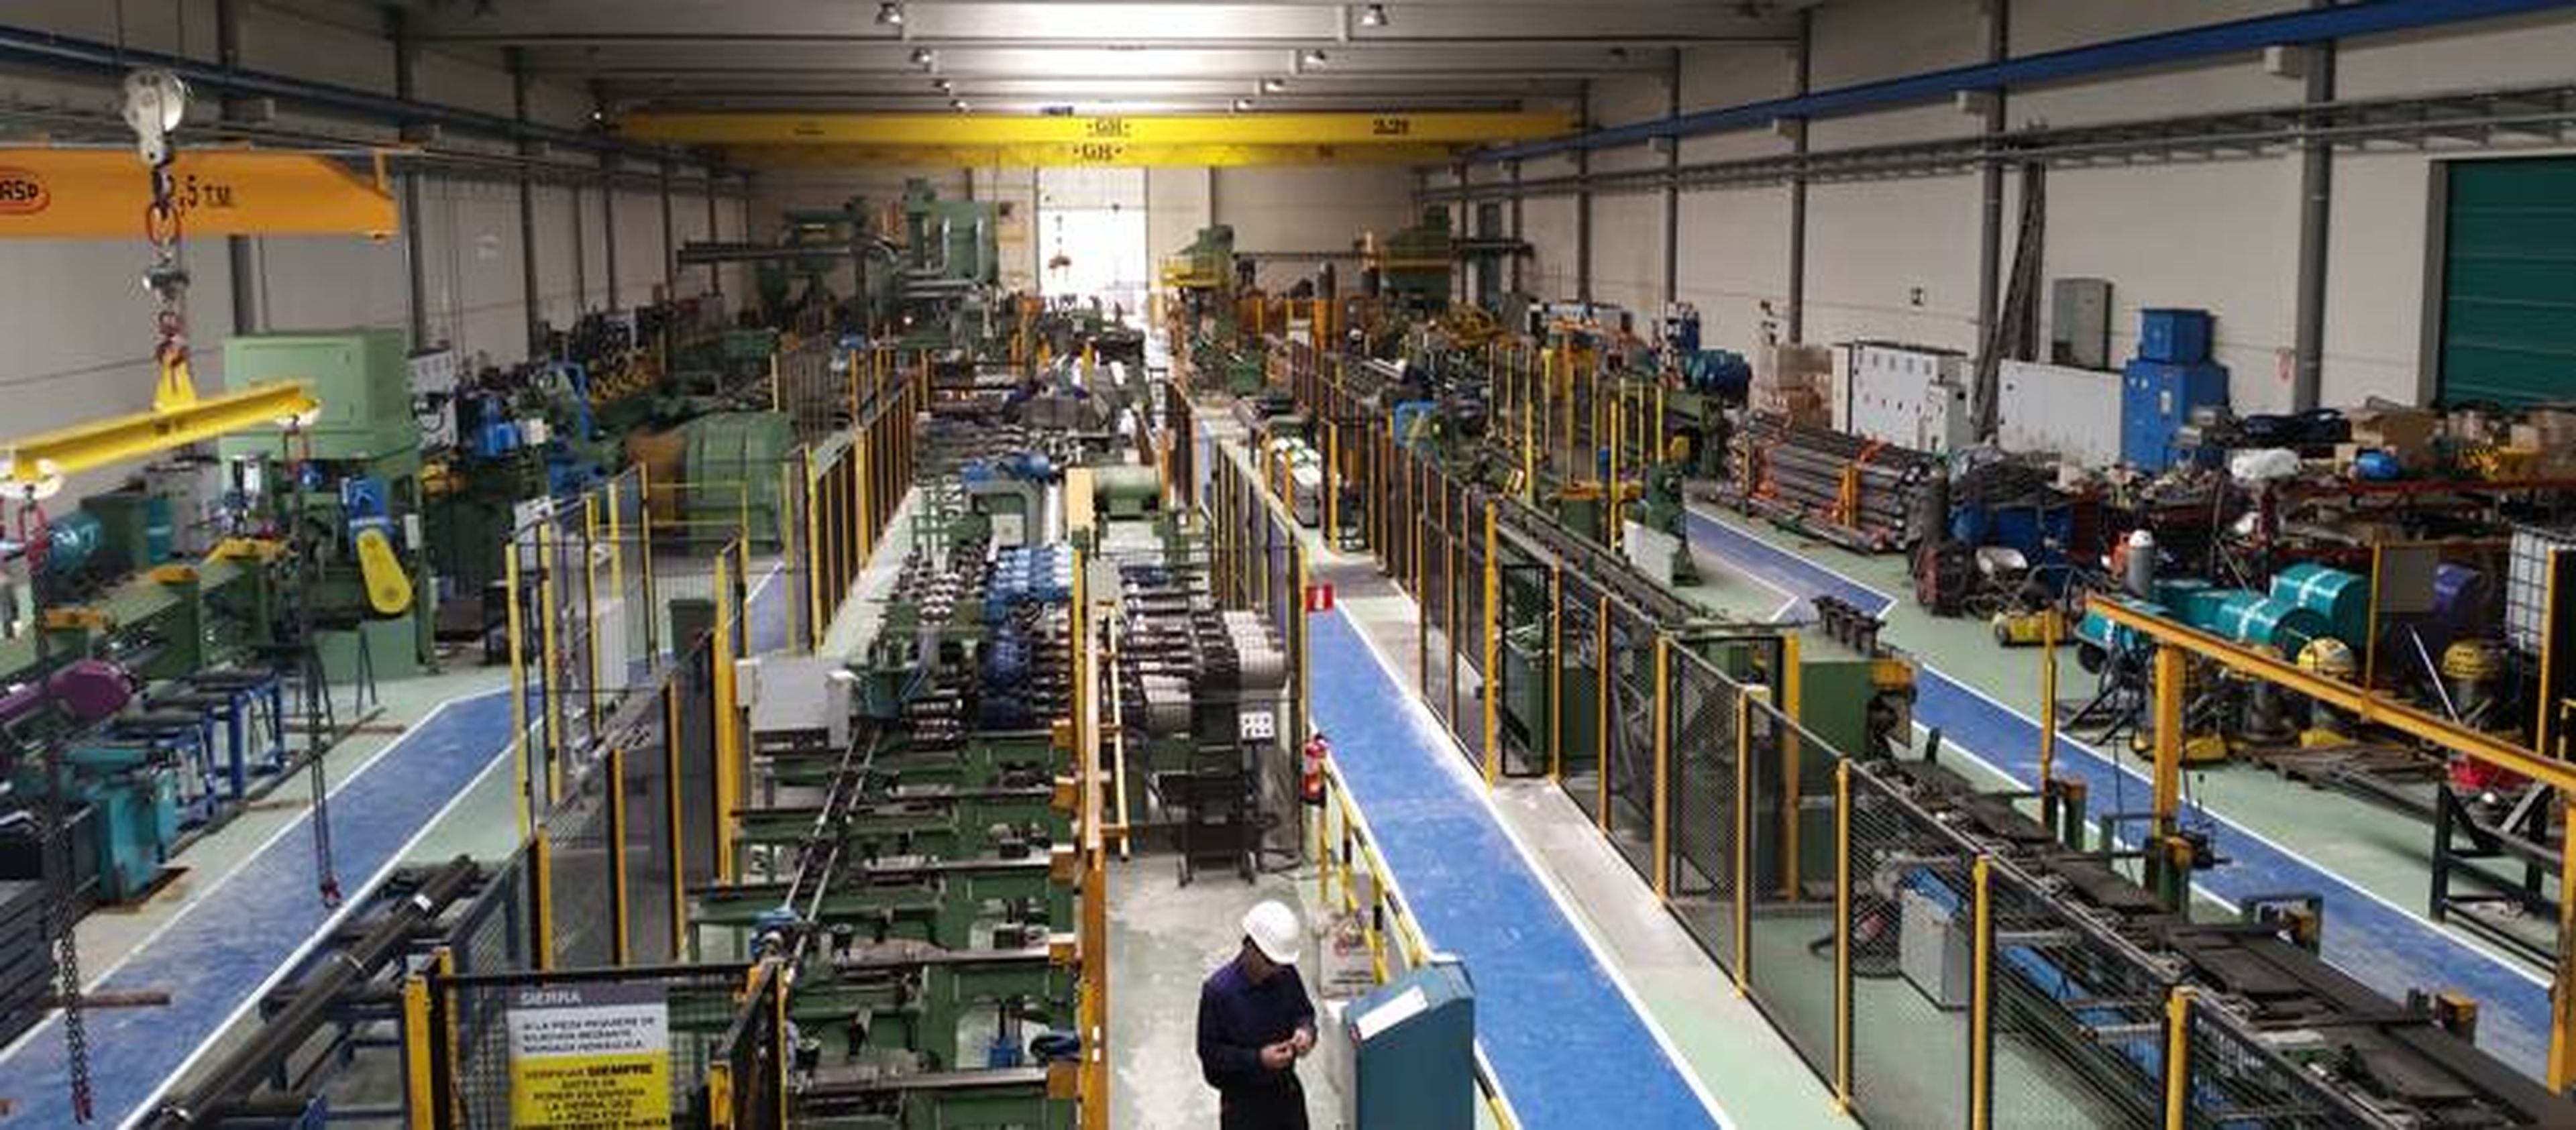 Instalaciones de Rugui Steel en Ólvega (Soria)